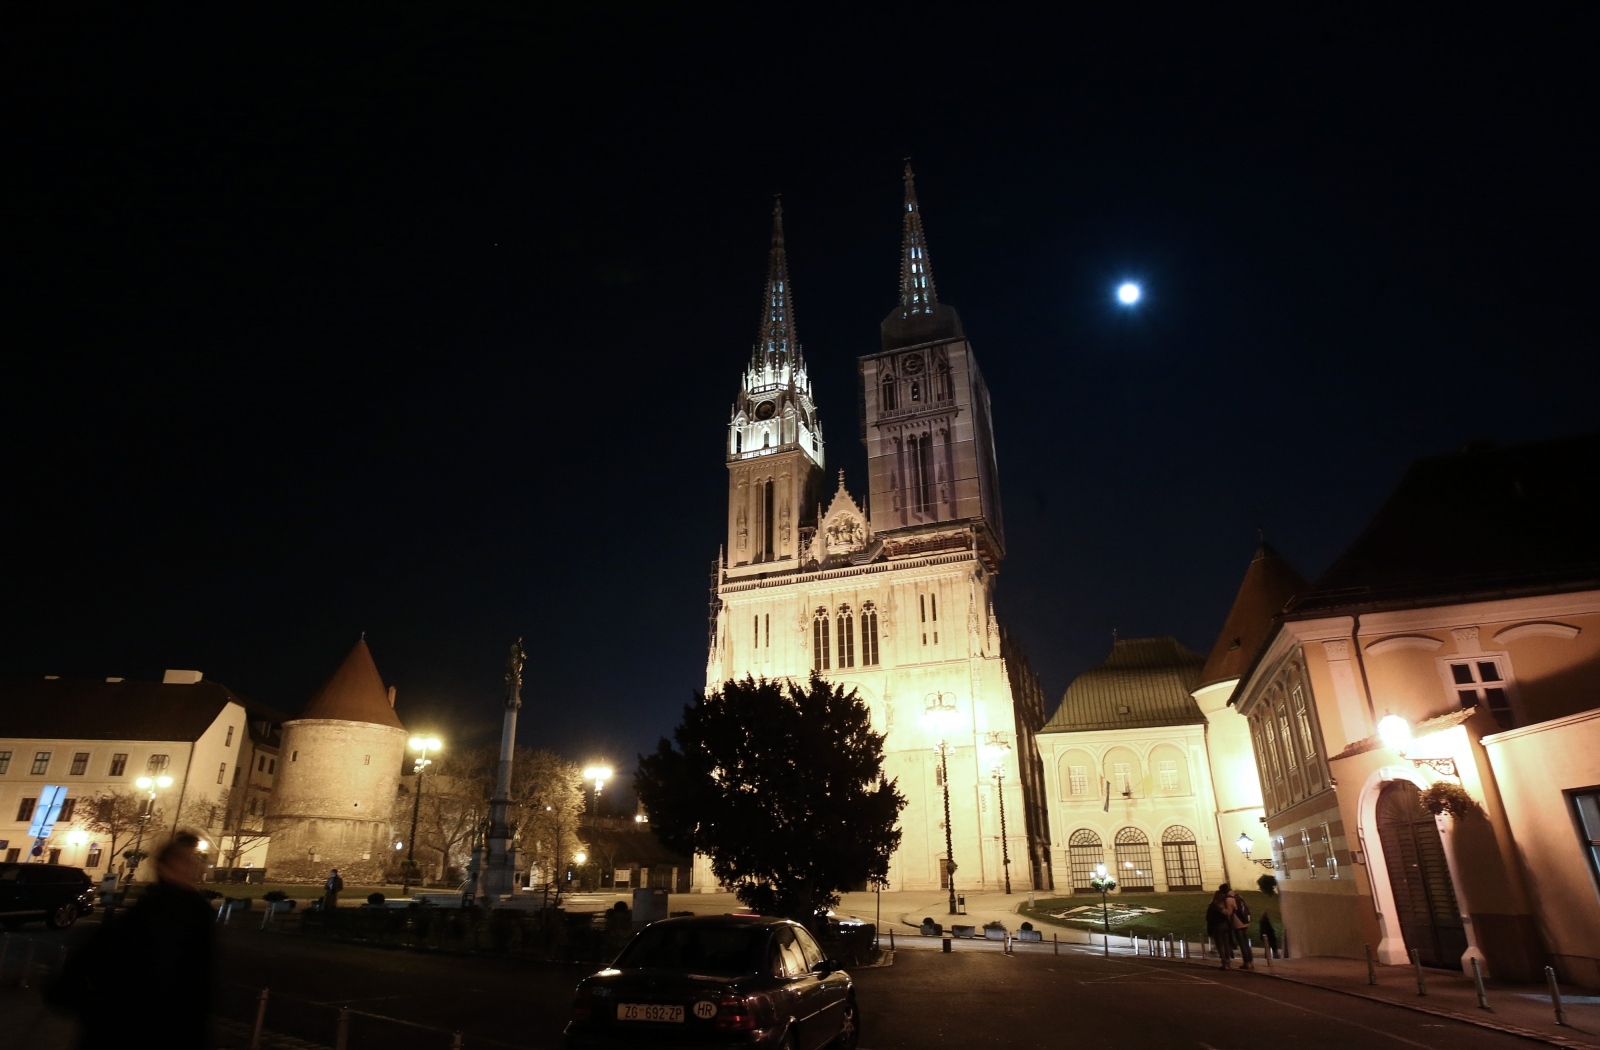 14.11.2016., Zagreb - Super Mjesec pojavio se i iznad samog centra grada. Astronomski spektakl u kojem je Mjesec ove noci najblize zemlji u posljednjih 86 godina. Mjesec ce danas od Zemlje biti udaljen samo 356.508 km i trebao bi nam se ciniti puno veci i sjajnij.
Photo: Sanjin Strukic/PIXSELL